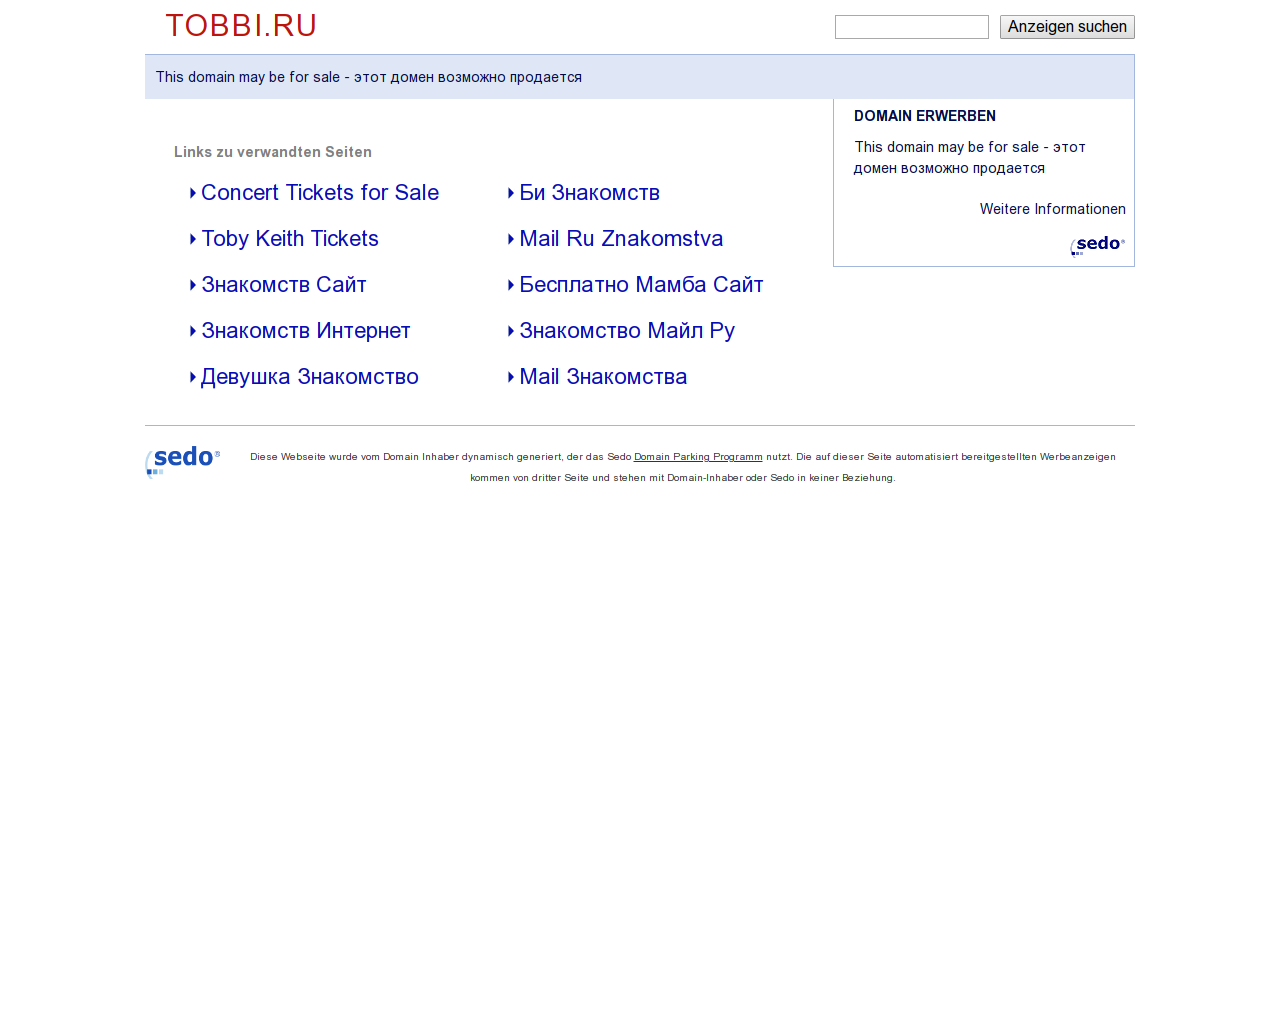 Изображение сайта tobbi.ru в разрешении 1280x1024